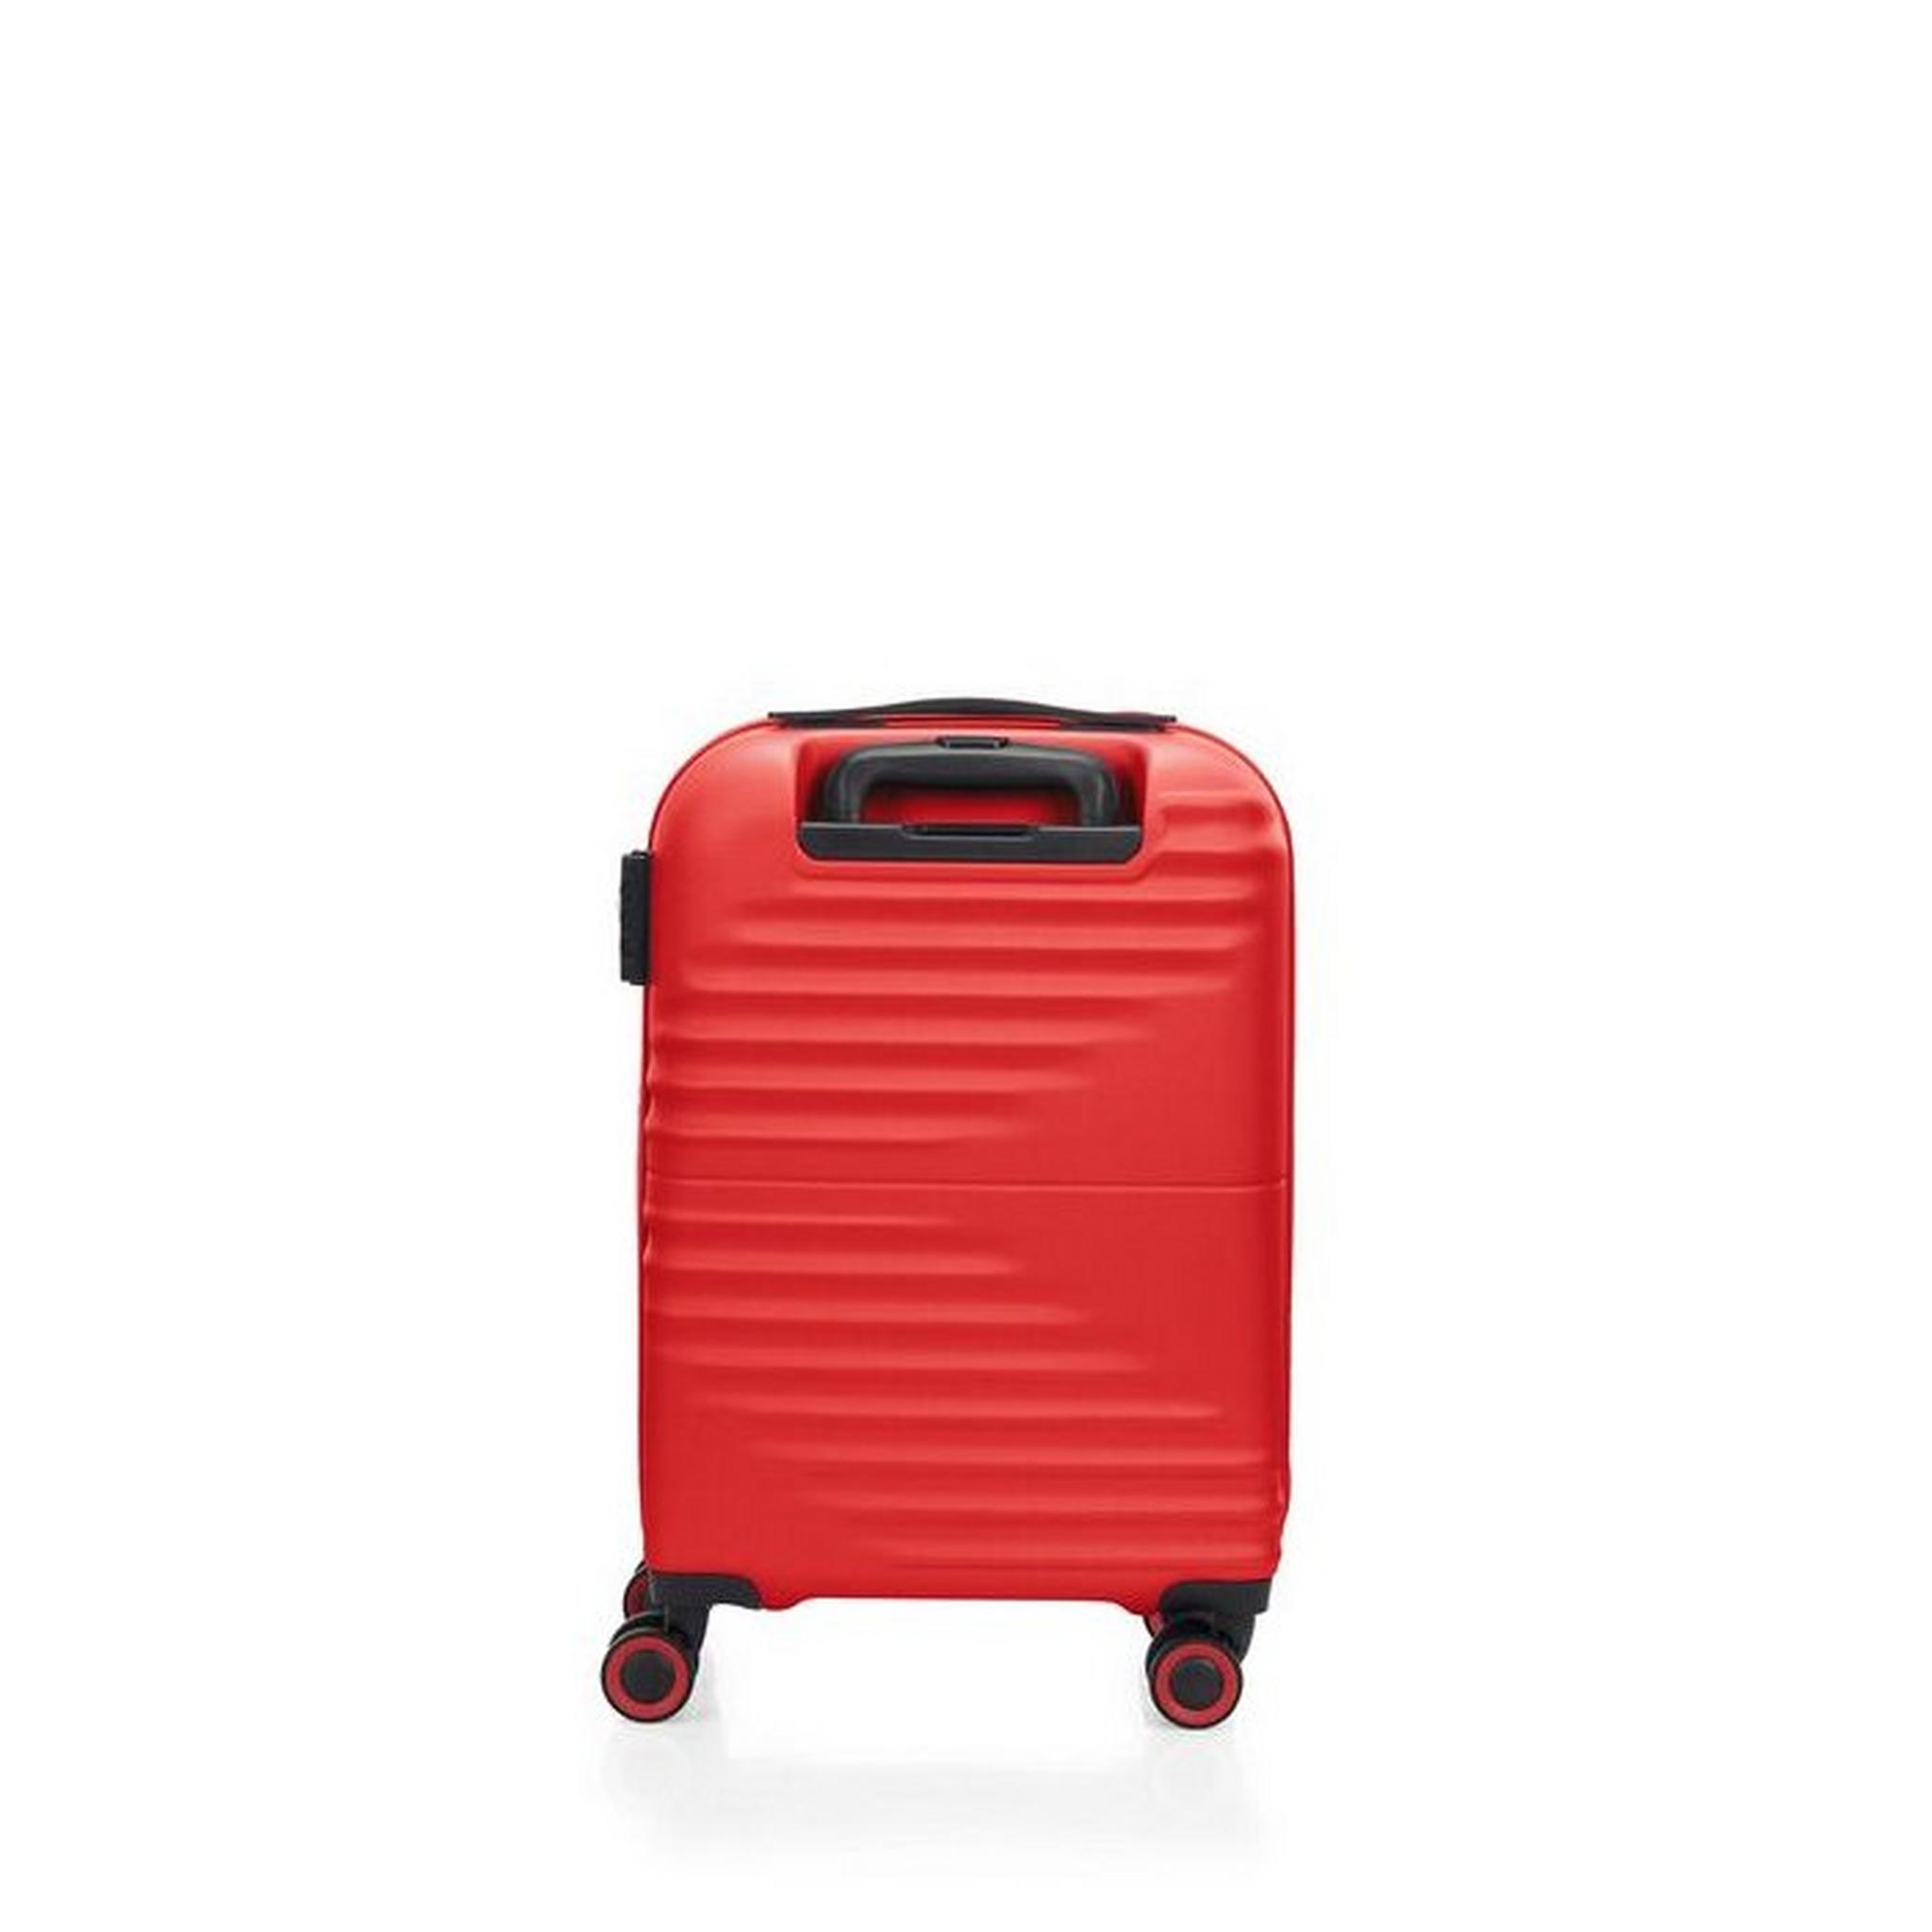 حقيبة سفر تويست ويفز بجوانب صلبة وعجلات دوارة  88 سم، QC6X00009 - أحمر فيفيد